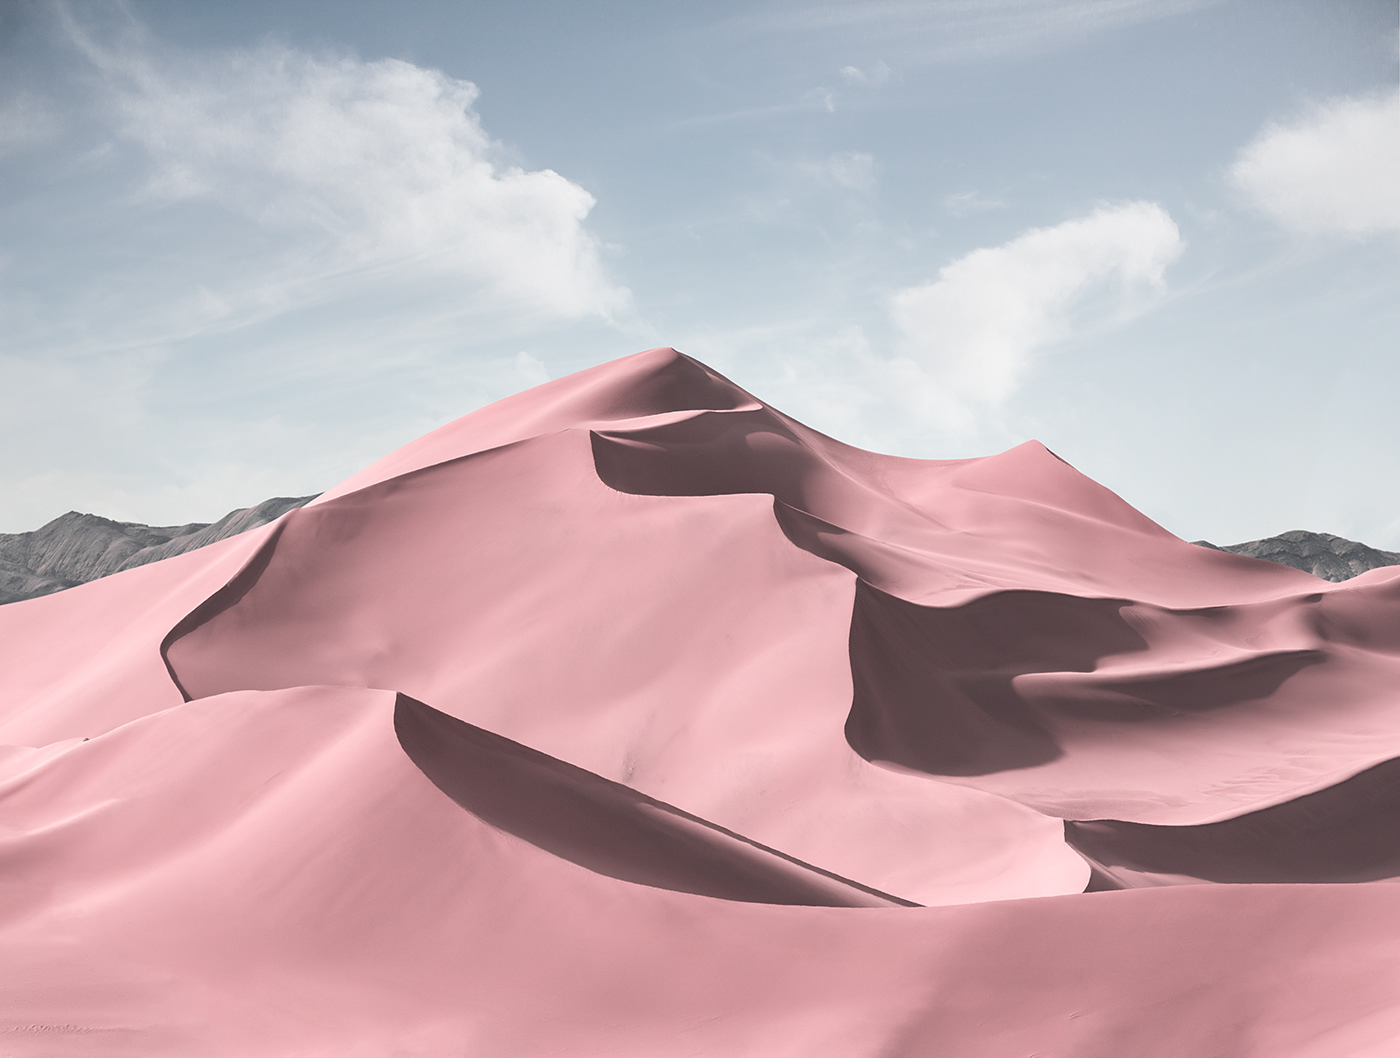 desert Jonas daley Magic Reality pink desert sand hill wallpaper 壁纸  粉色沙漠 魔幻现实 鸣沙山